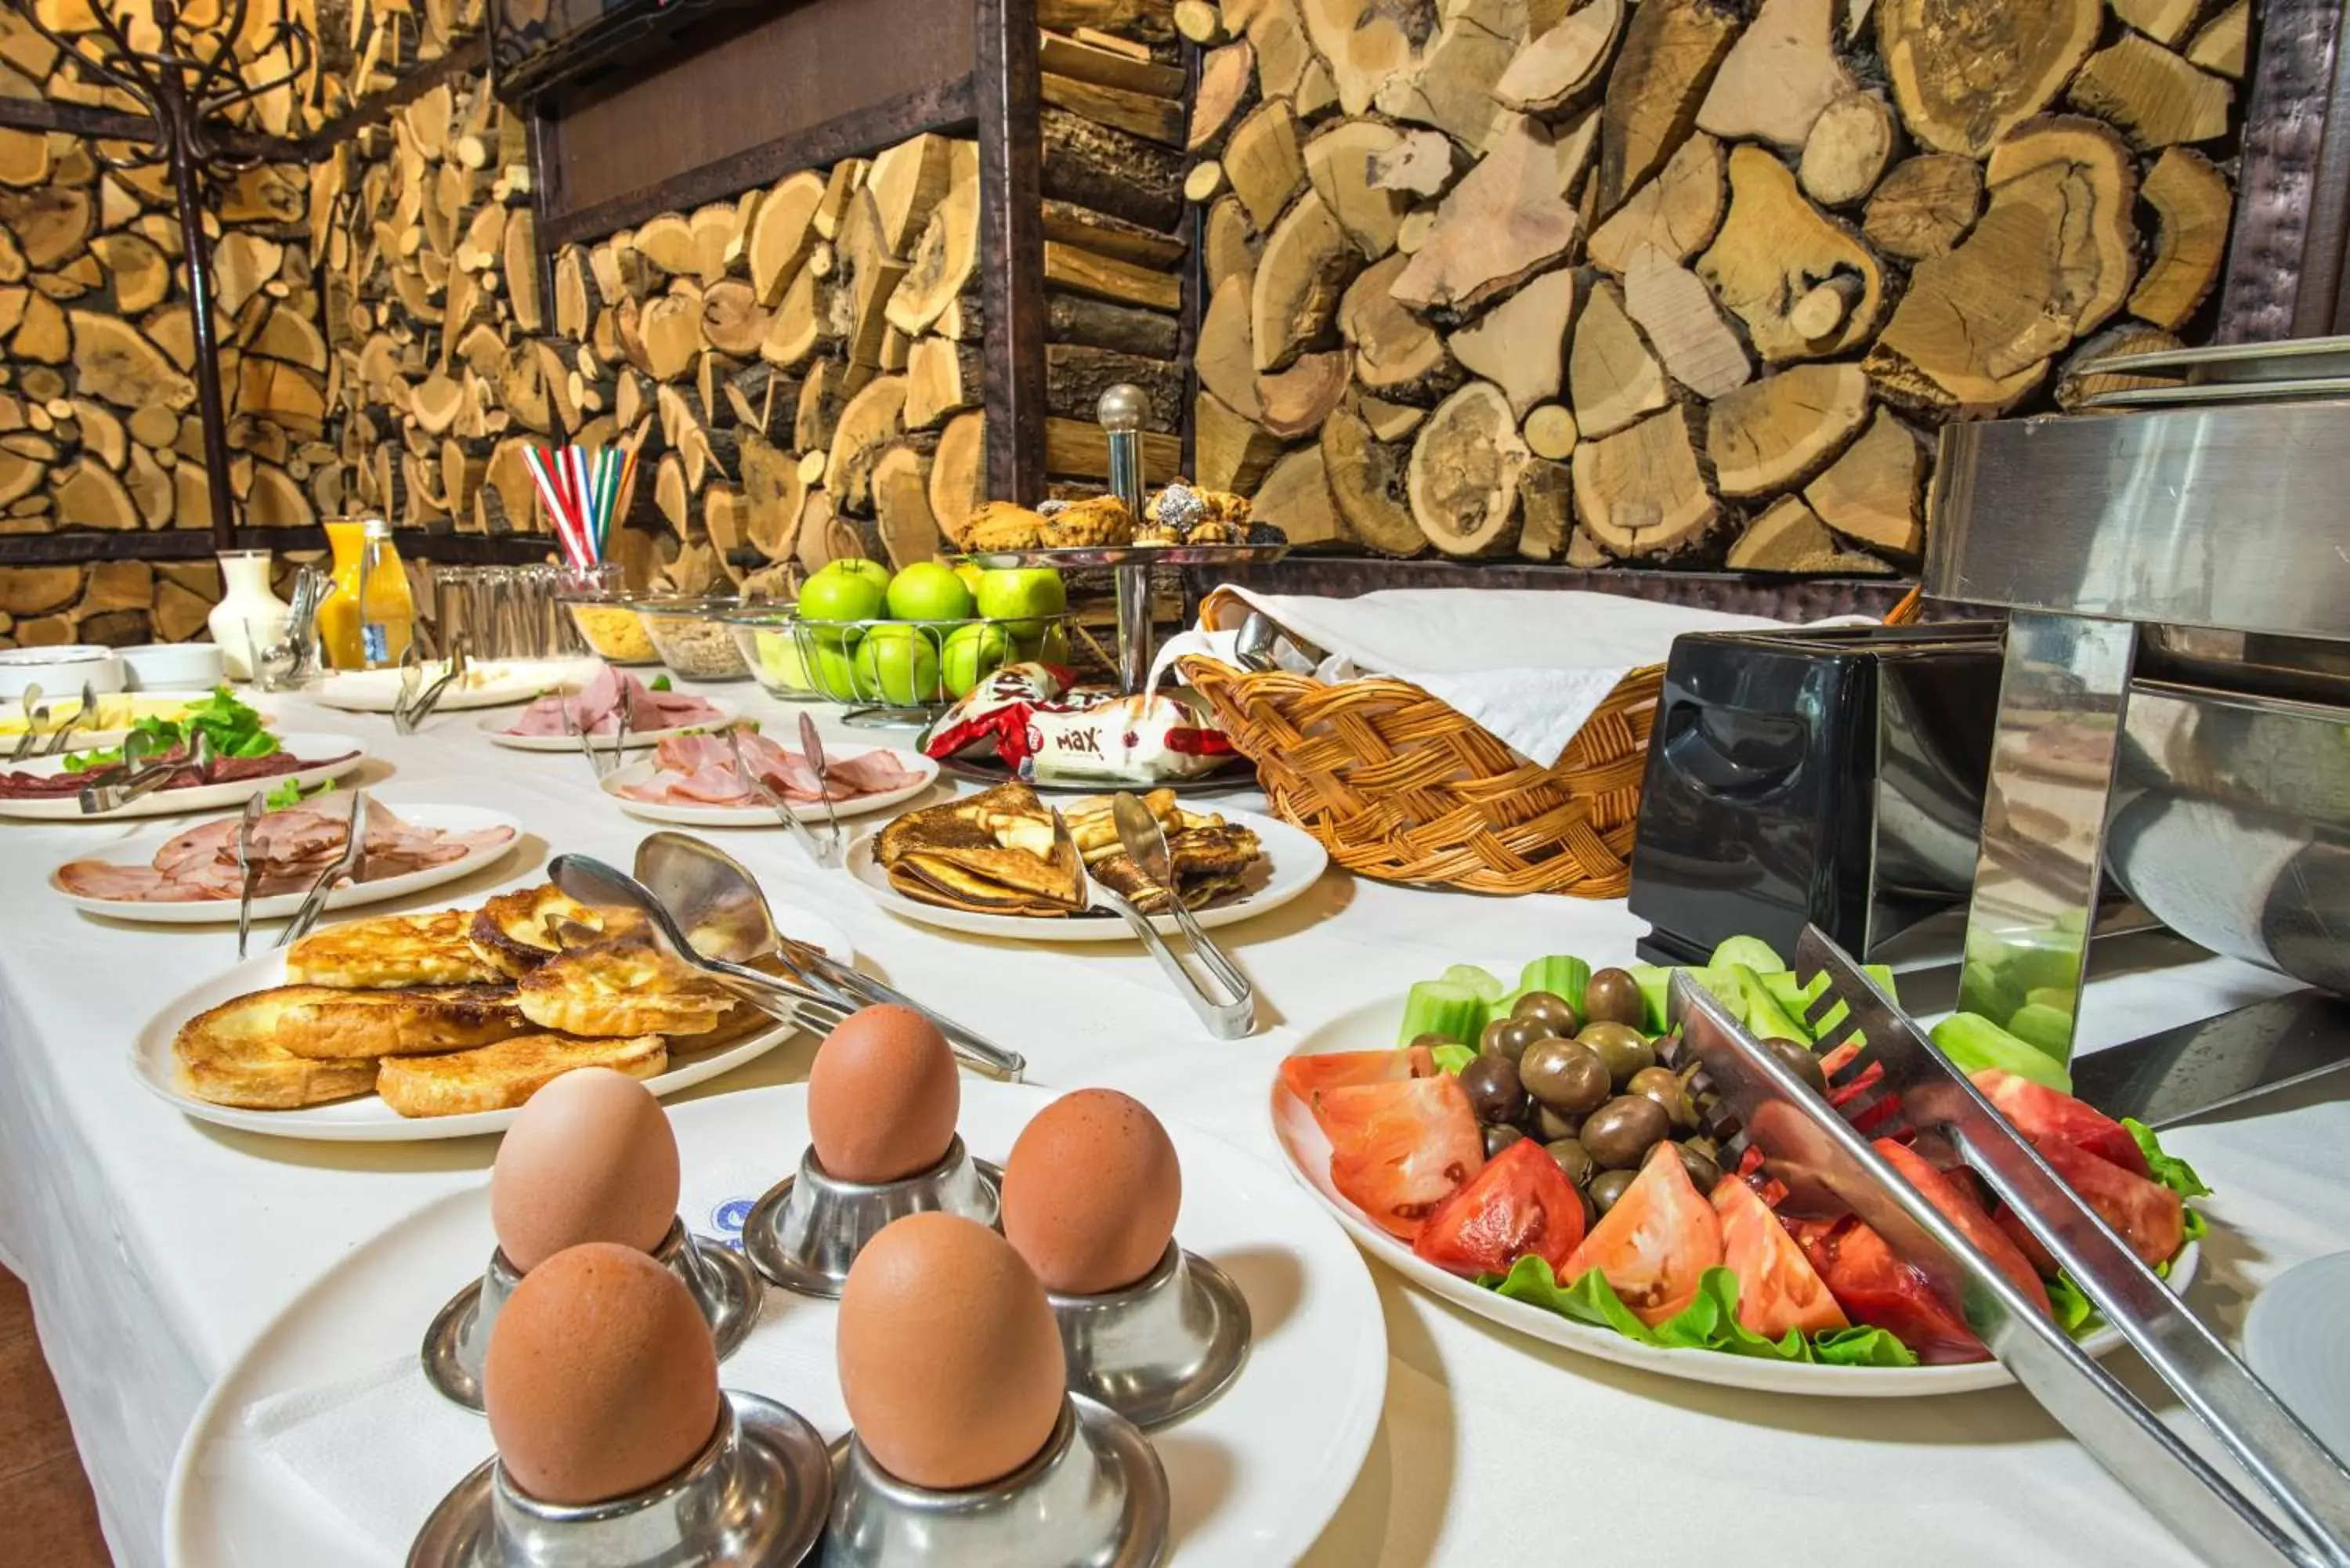 Buffet breakfast in Uniqato Hotel